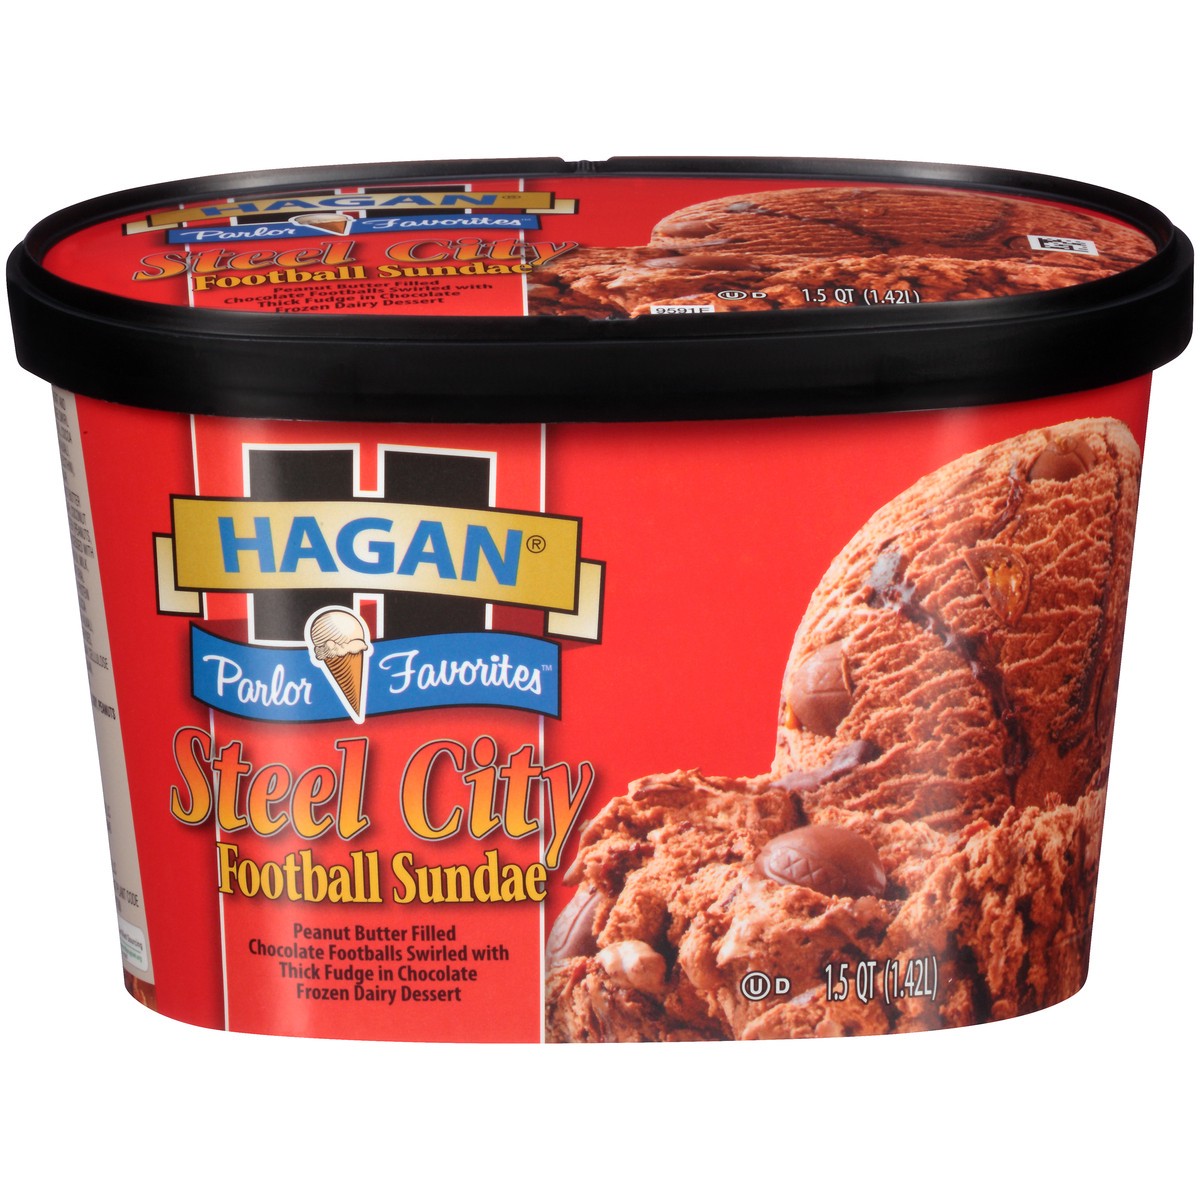 slide 1 of 10, Hagan Parlor Favorites Steel City Football Sundae Ice Cream 1.5 qt. Tub, 1.42 liter